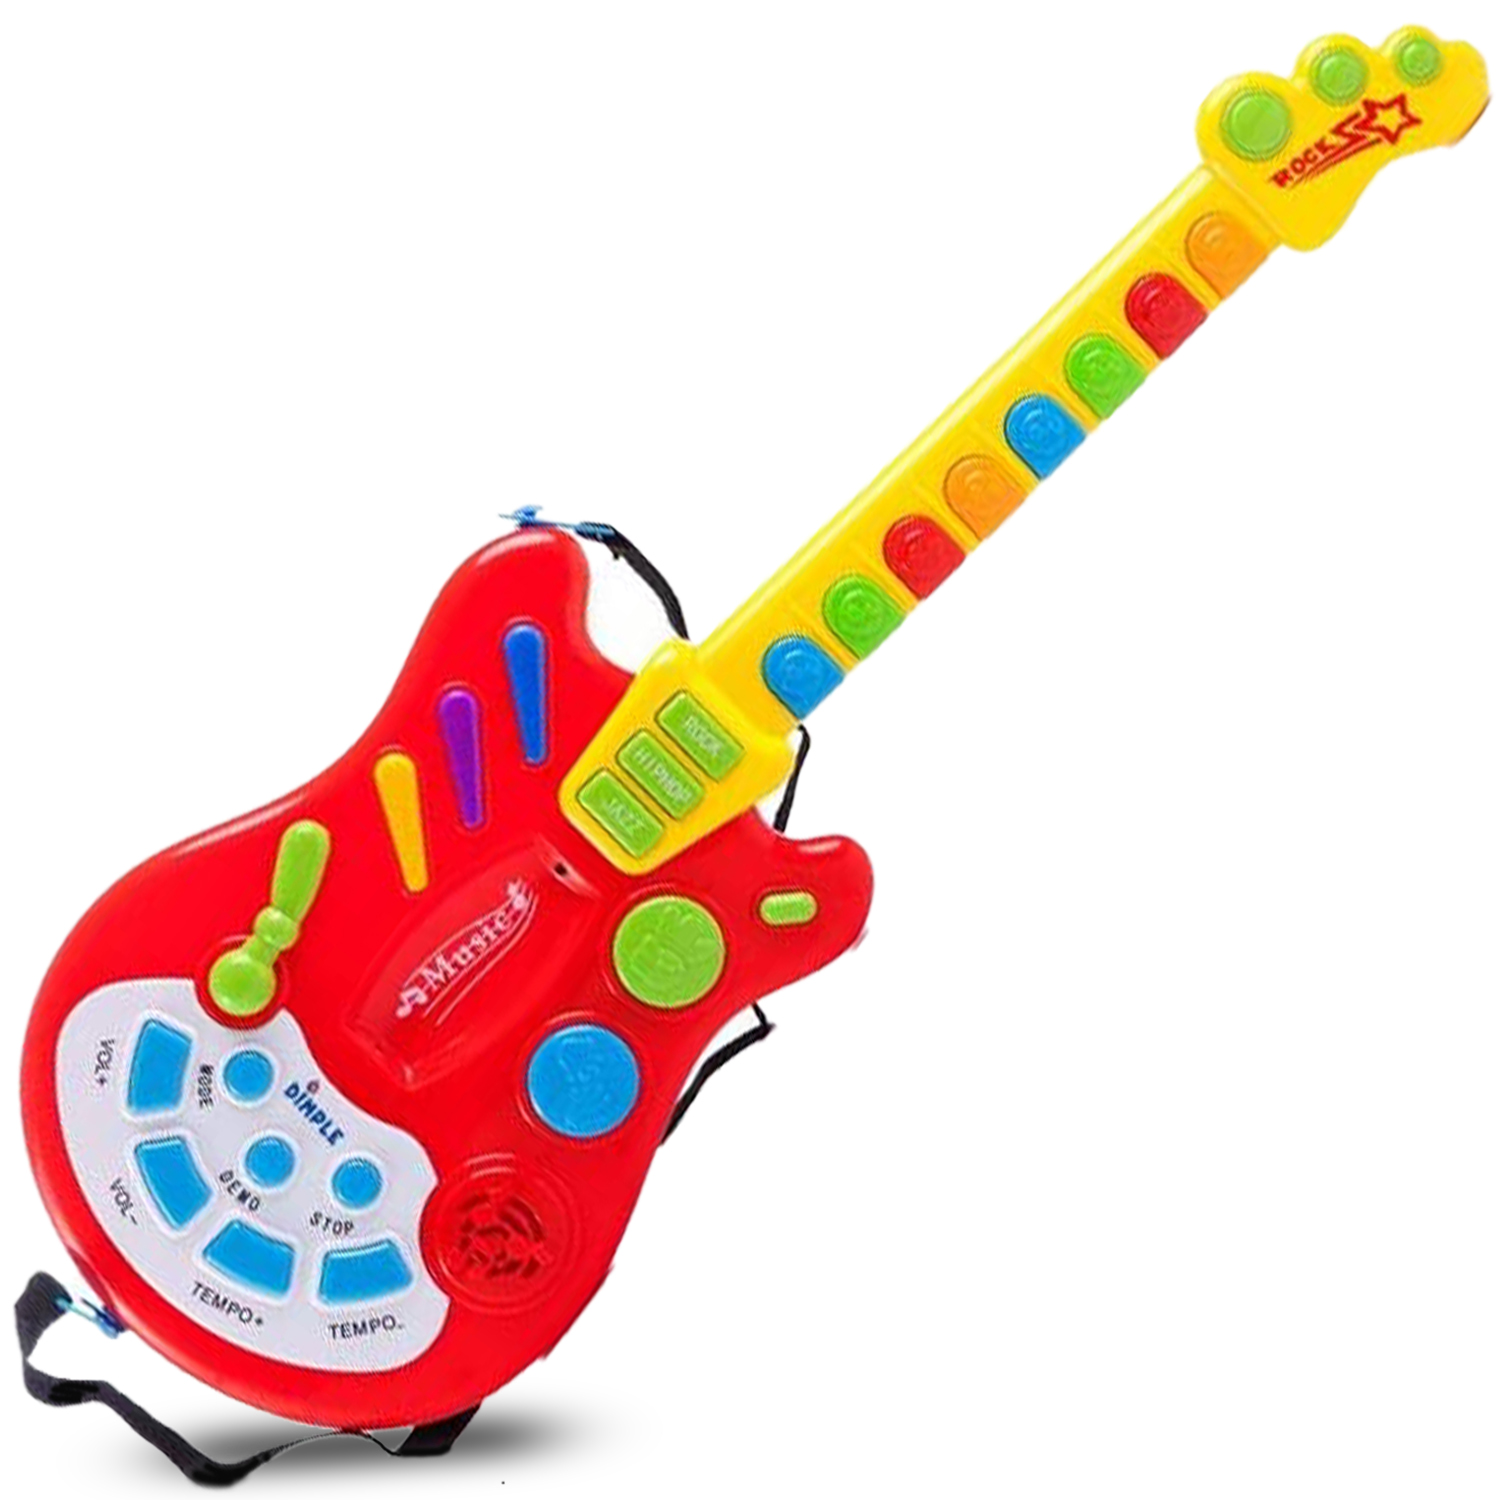 https://www.dimple.nyc/images/categories/kids'-guitars-strings.jpg